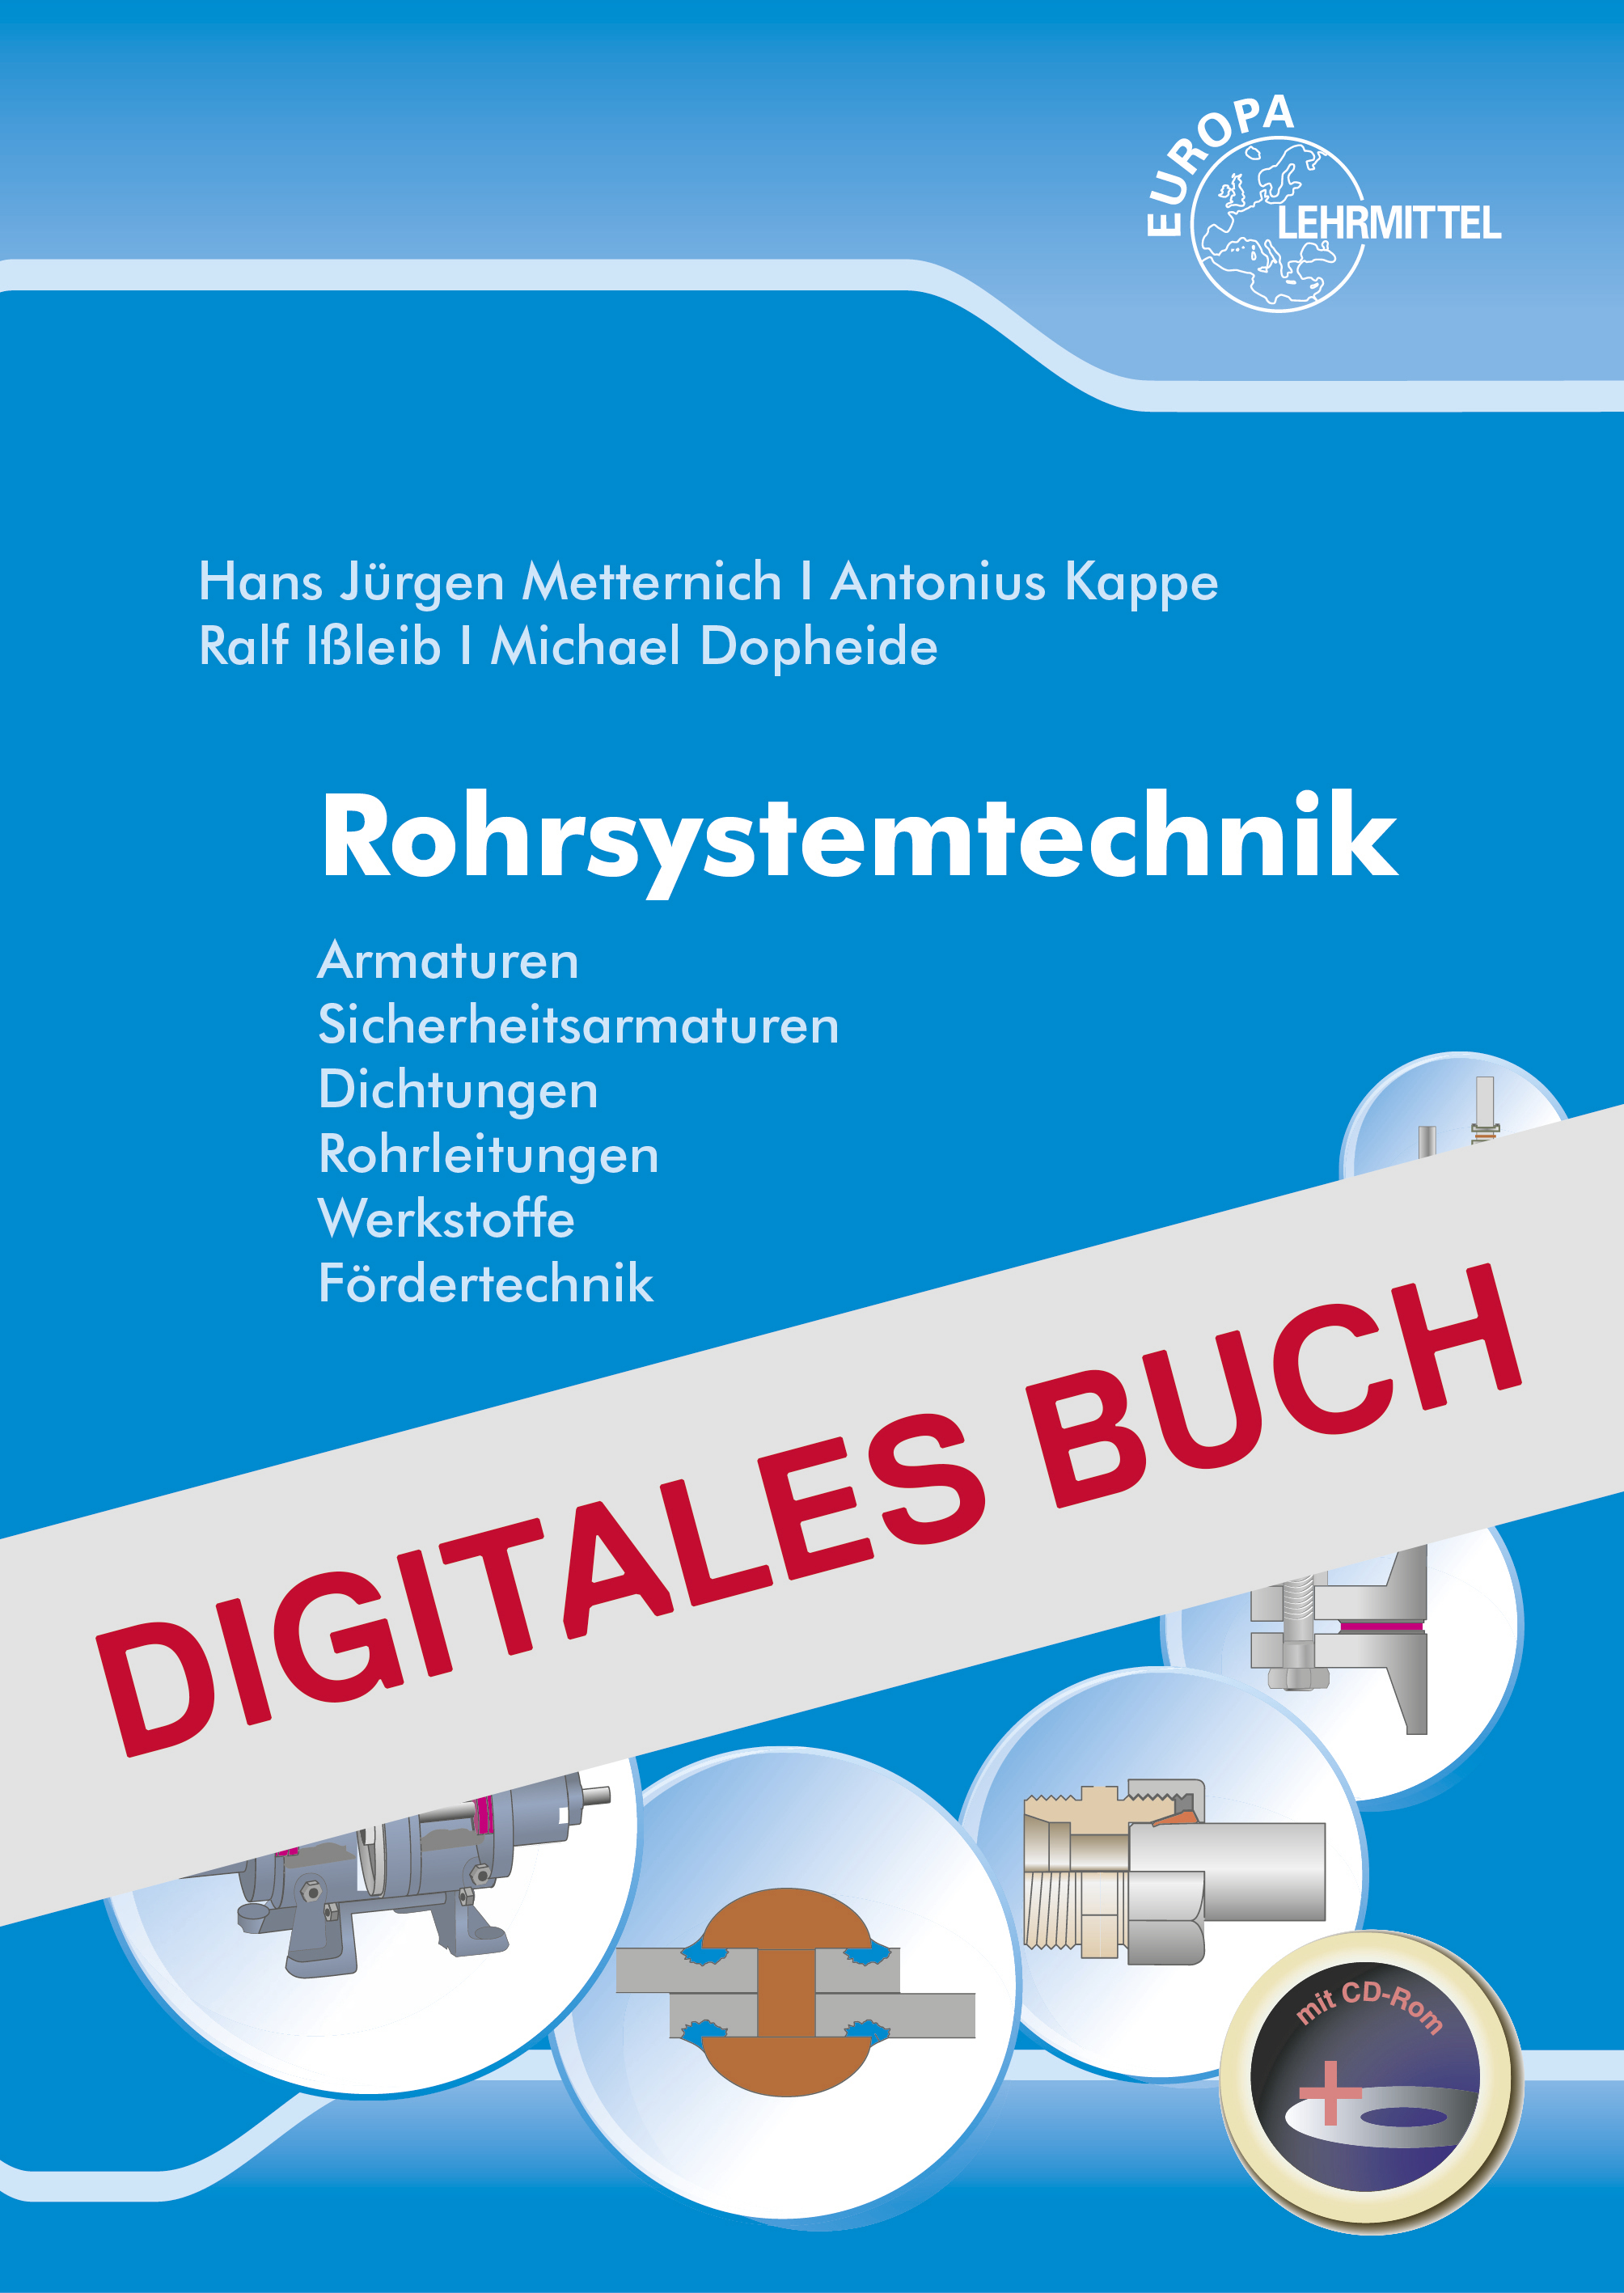 Rohrsystemtechnik - Digitales Buch